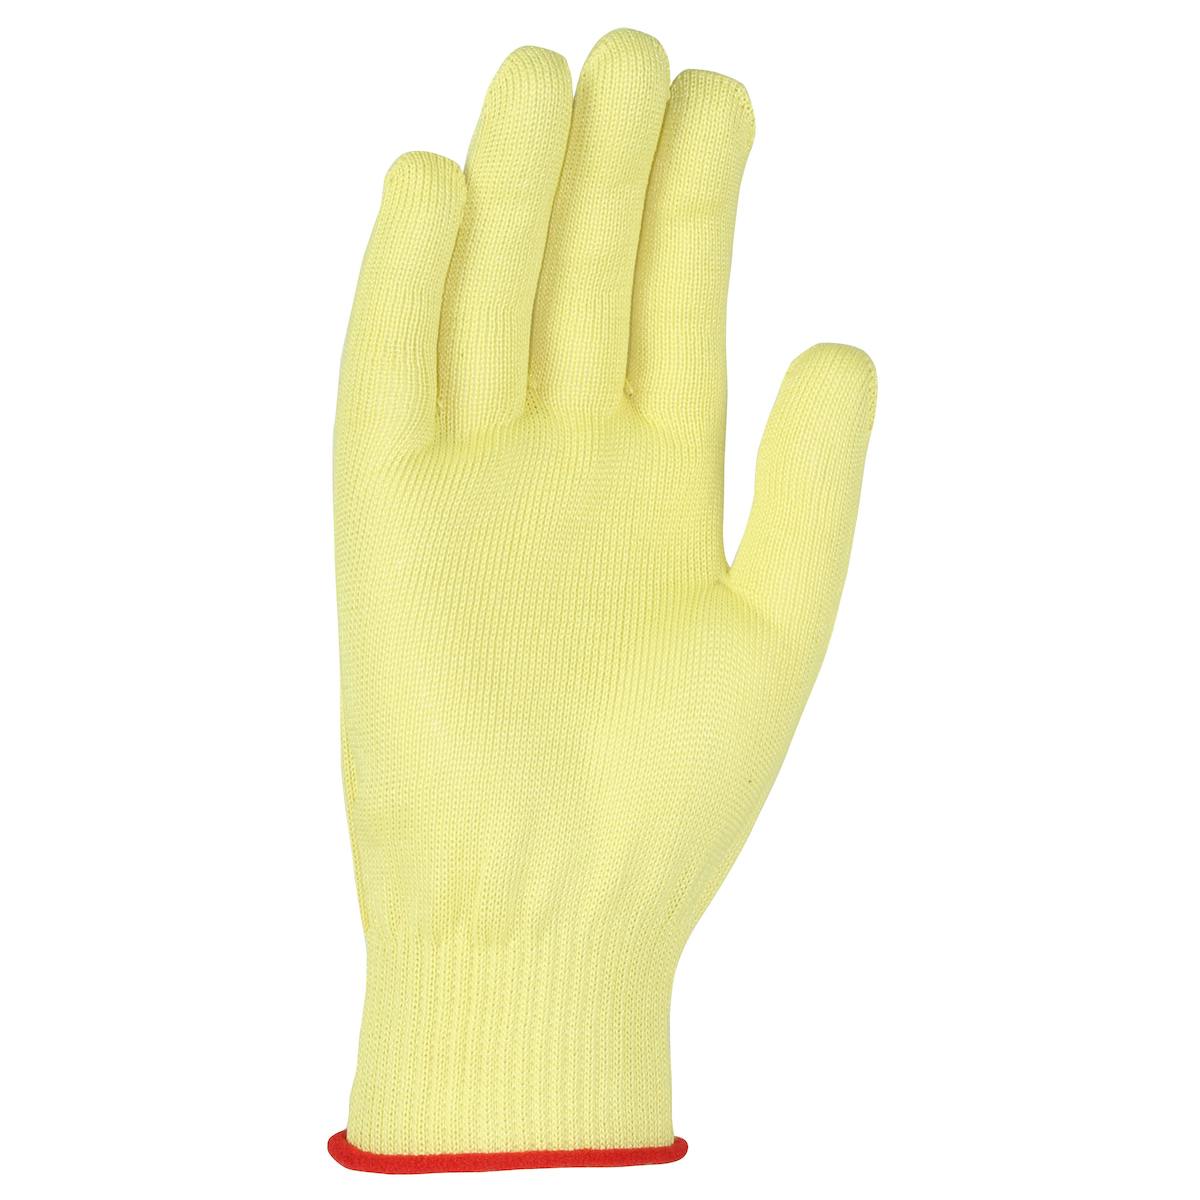 Kut Gard® Seamless Knit Aramid Filament Blended Glove - Light Weight (M13ATW)